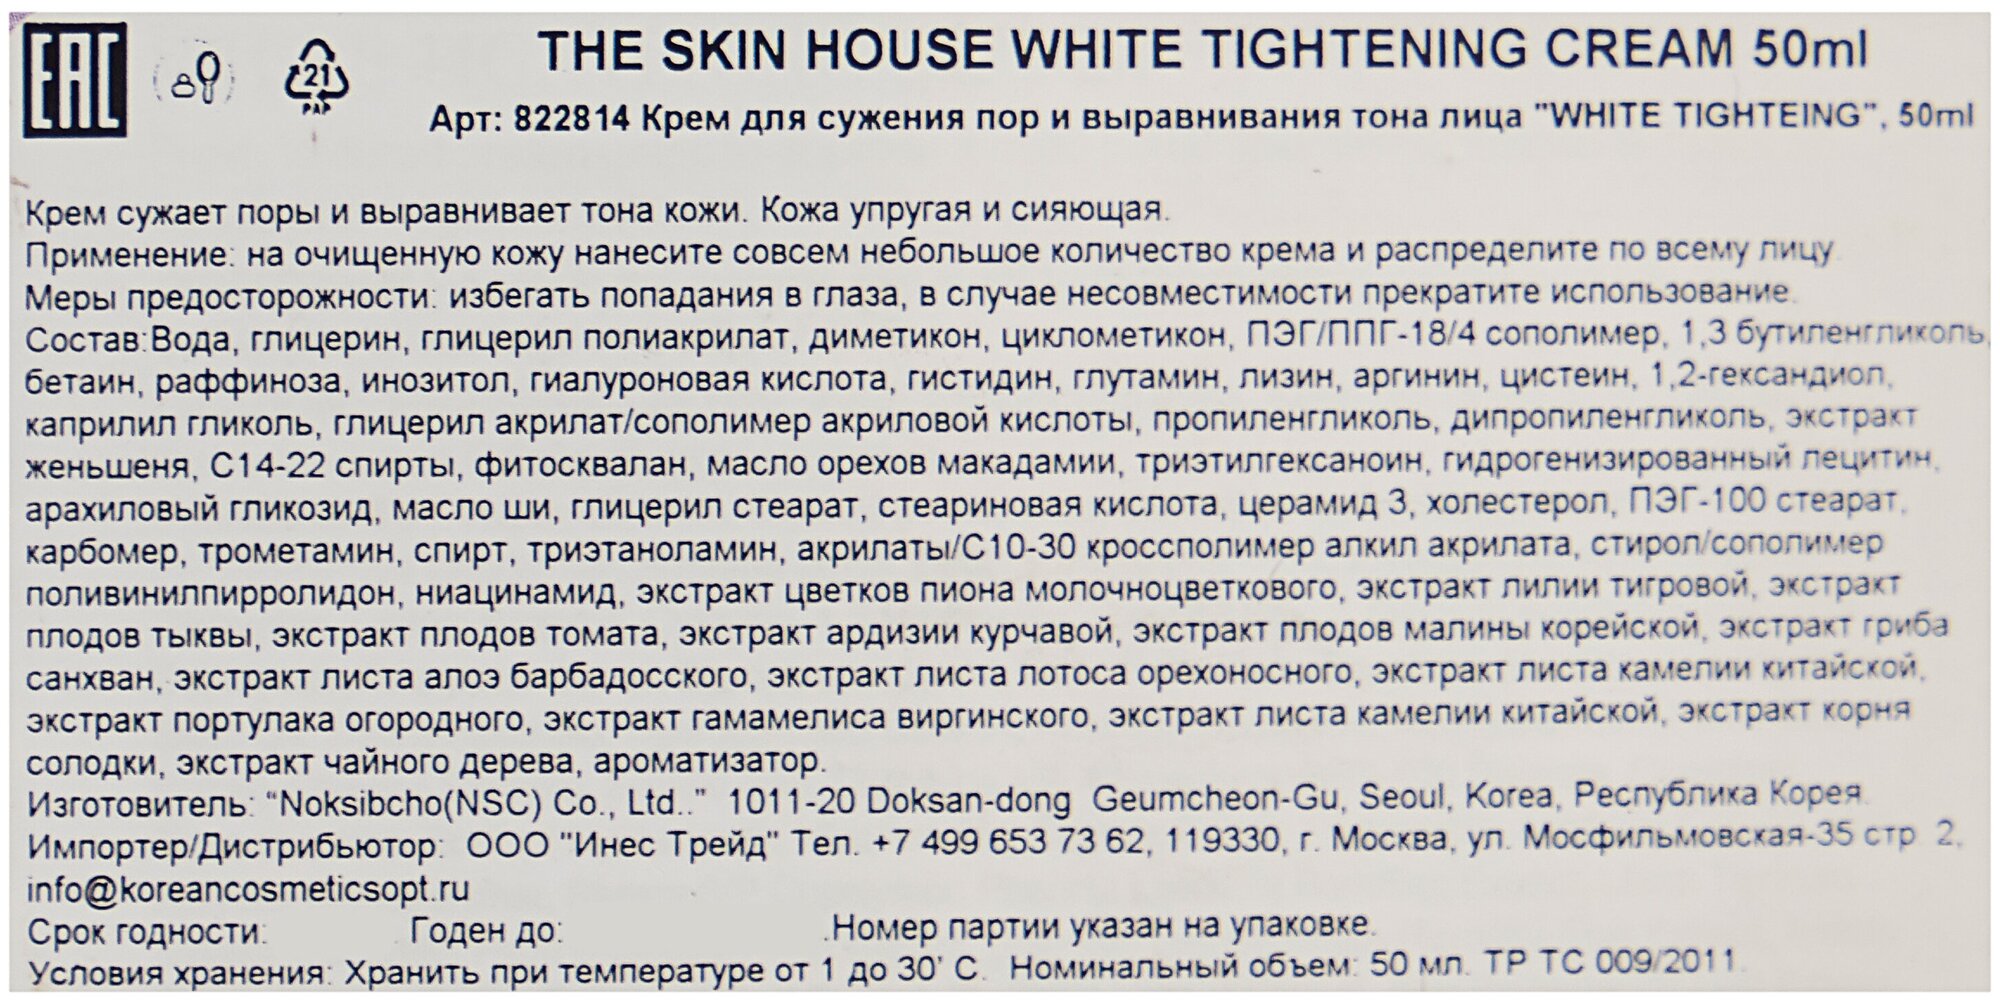 Крем для сужения пор и выравнивания тона лица The Skin House White Tightening Cream 50мл - фото №3